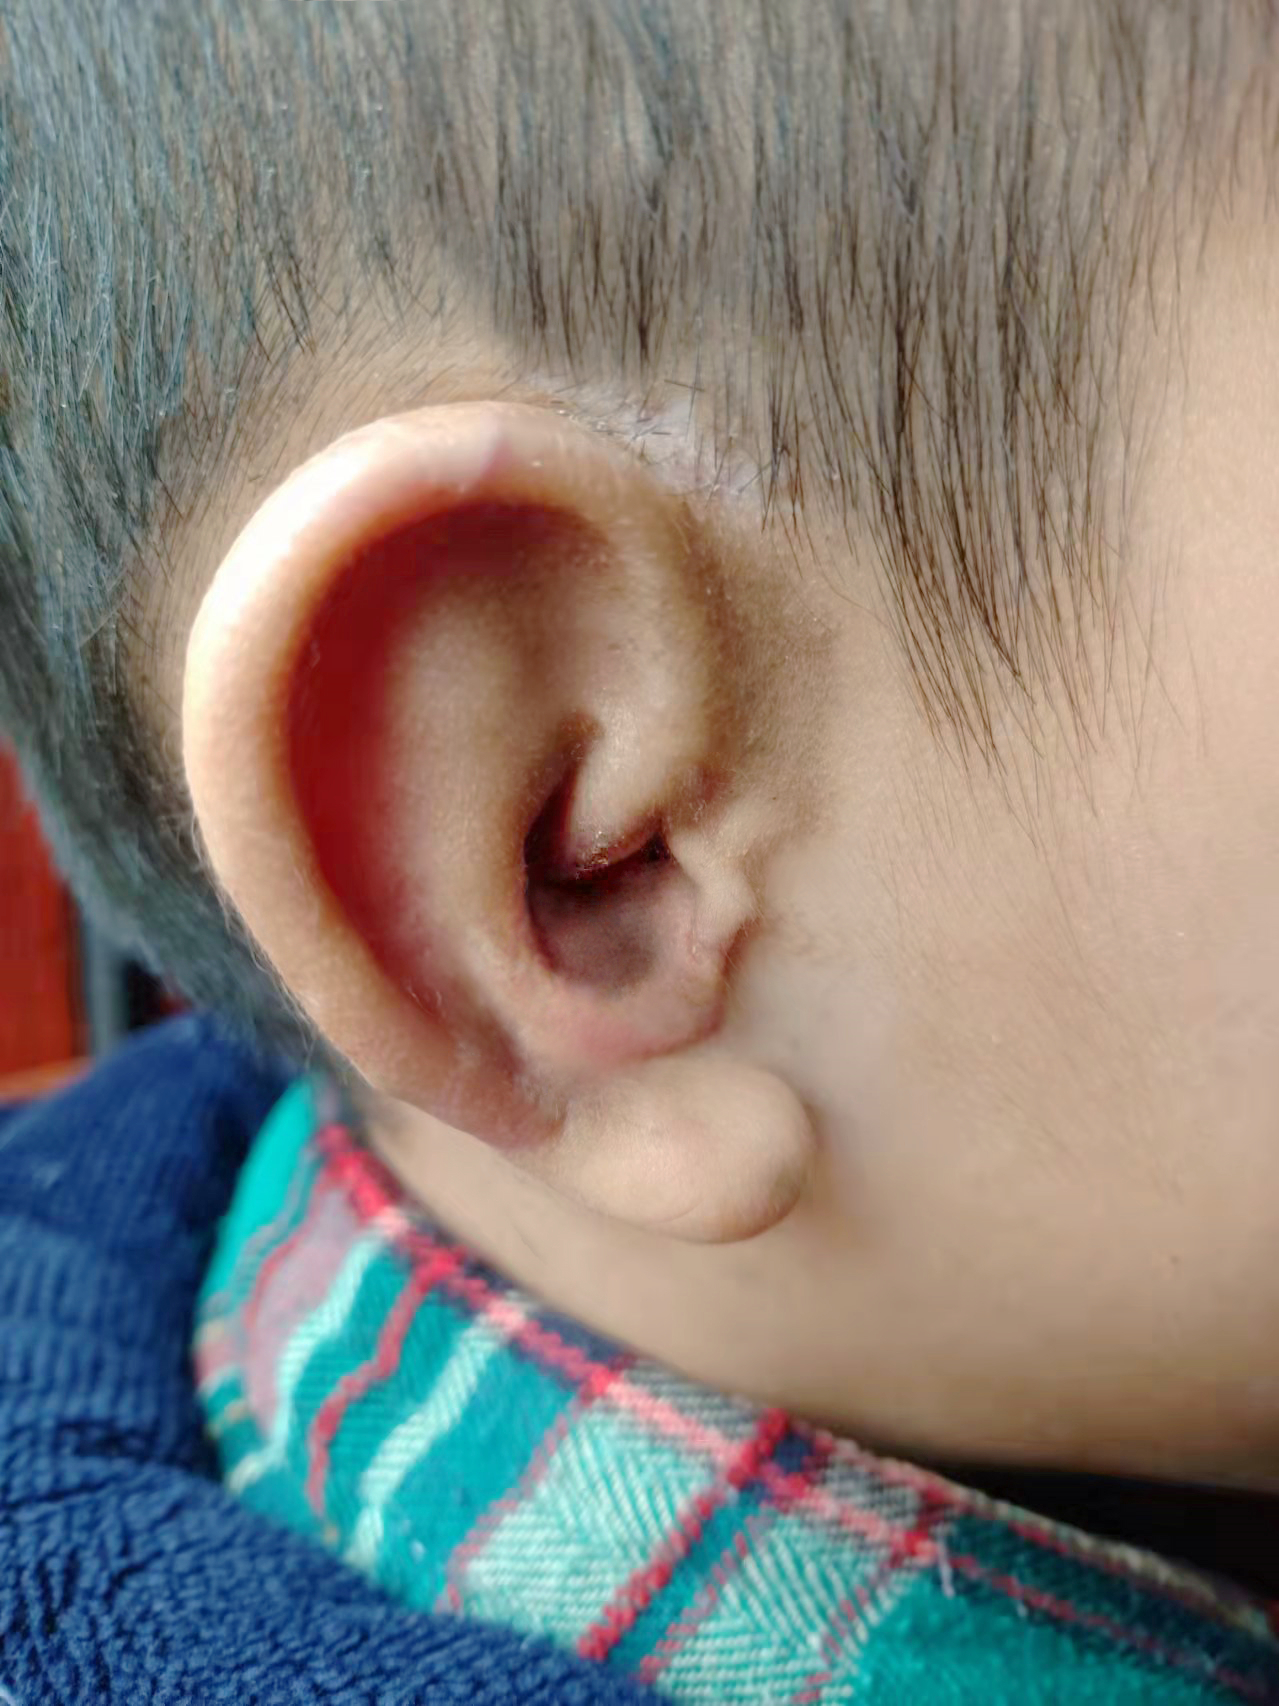 【案例分析】小耳畸形患者时隔一年回院做二期手术，患者重获“新”耳朵 - 哔哩哔哩